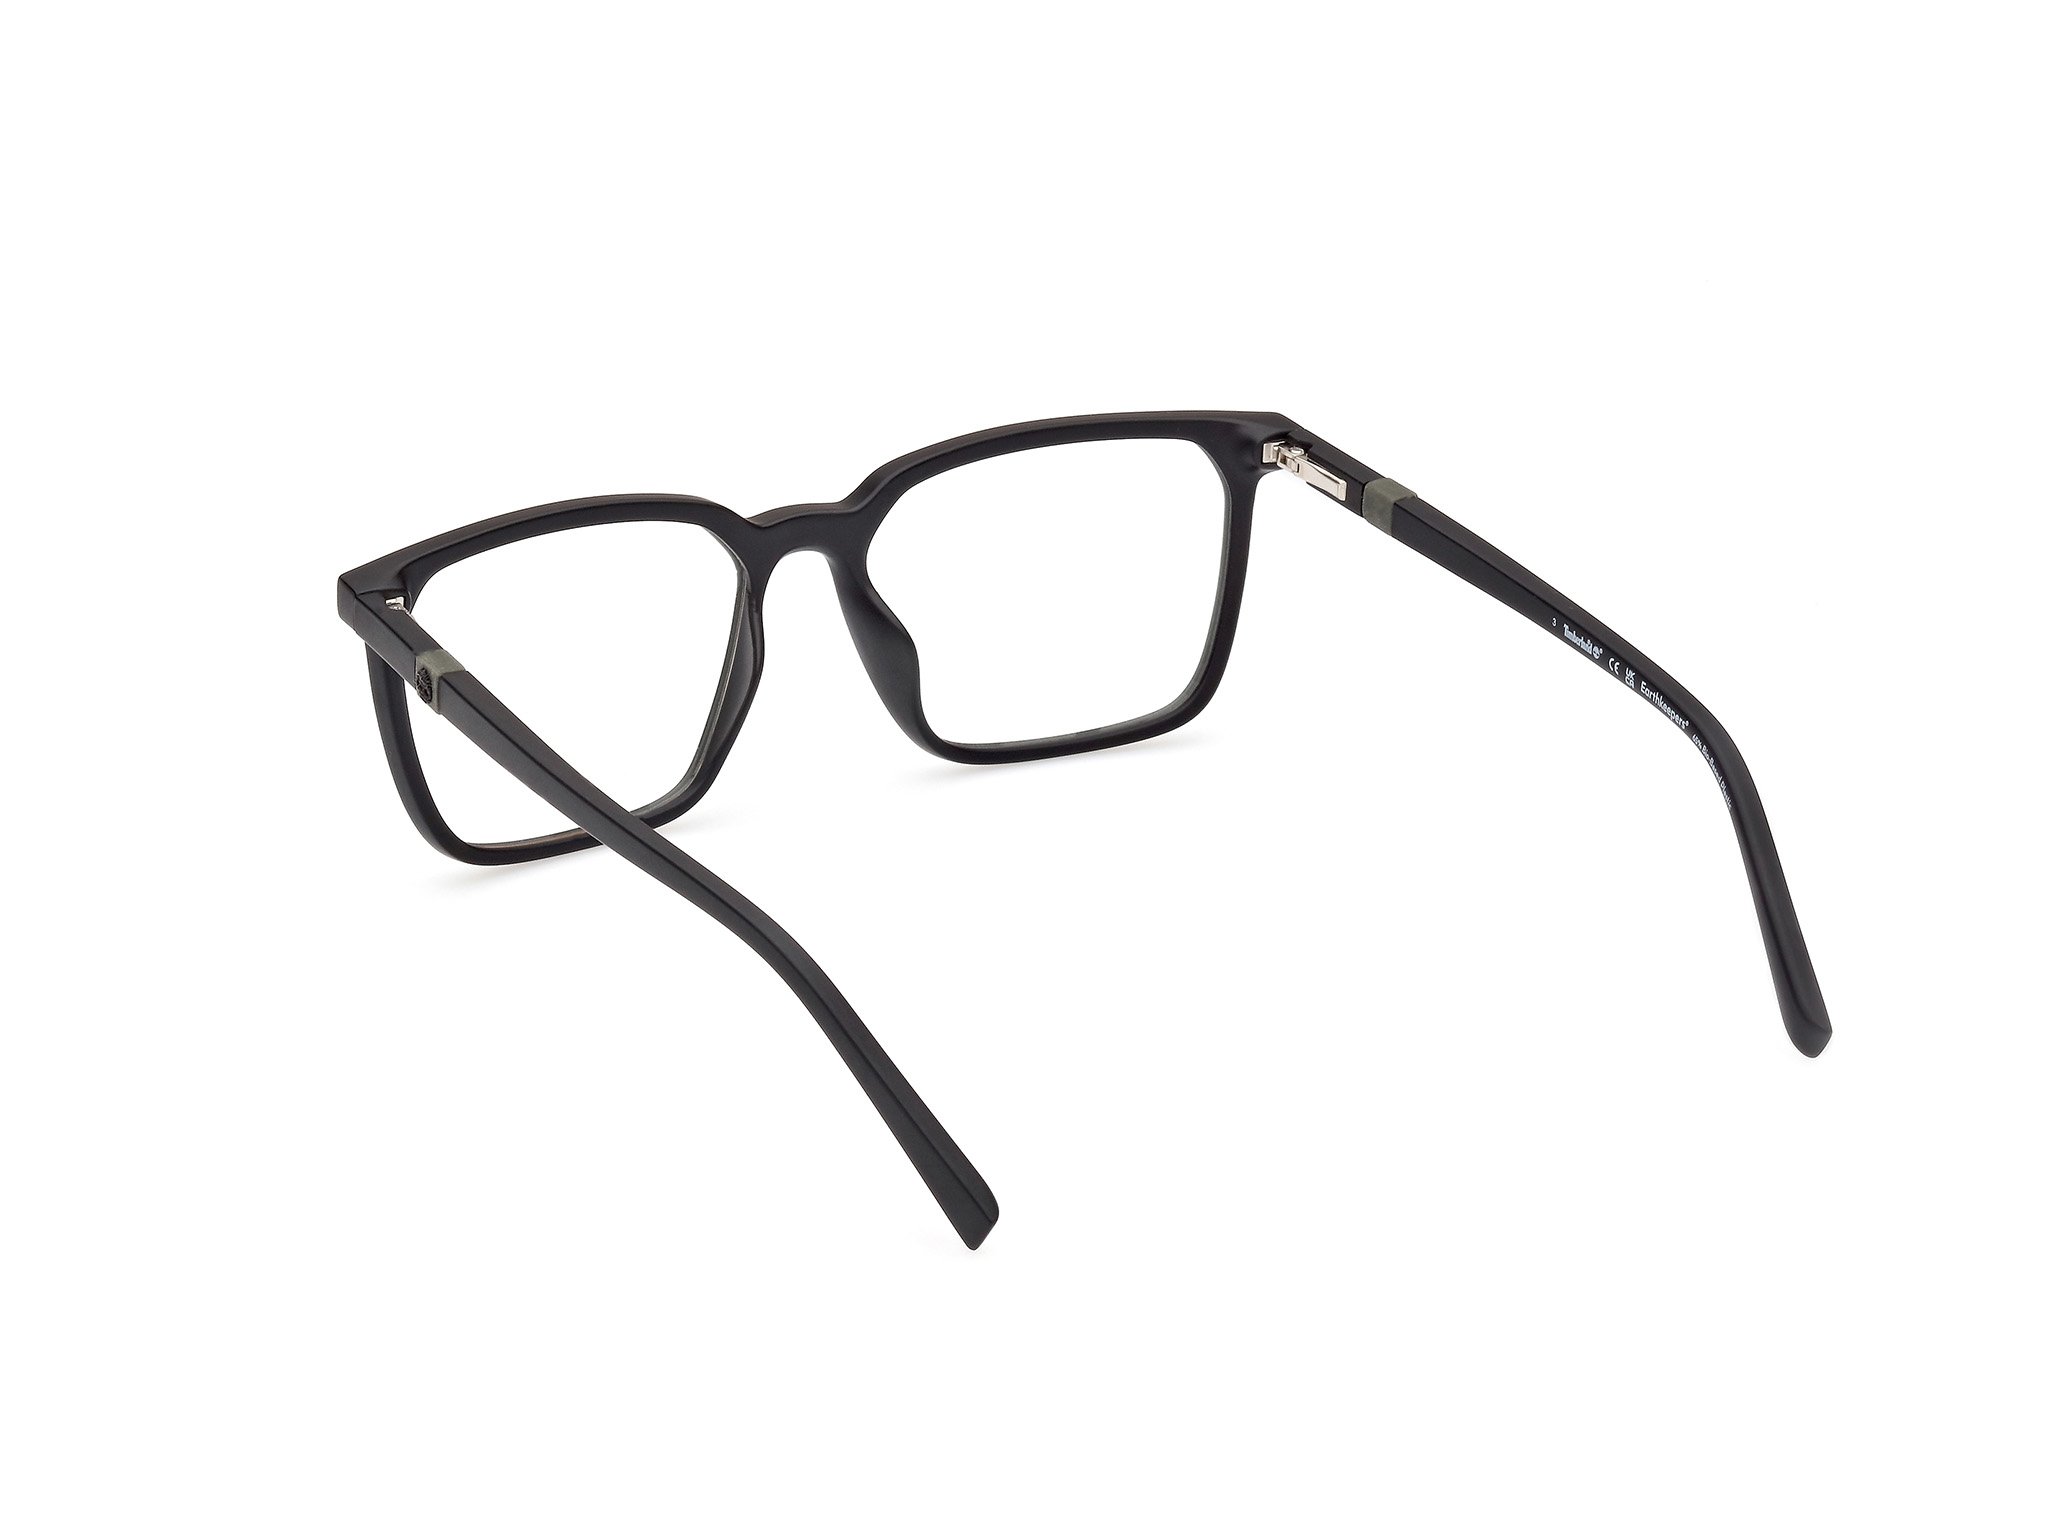 Das Bild zeigt die Korrektionsbrille TB1819-H 002 von der Marke Timberland in schwarz.